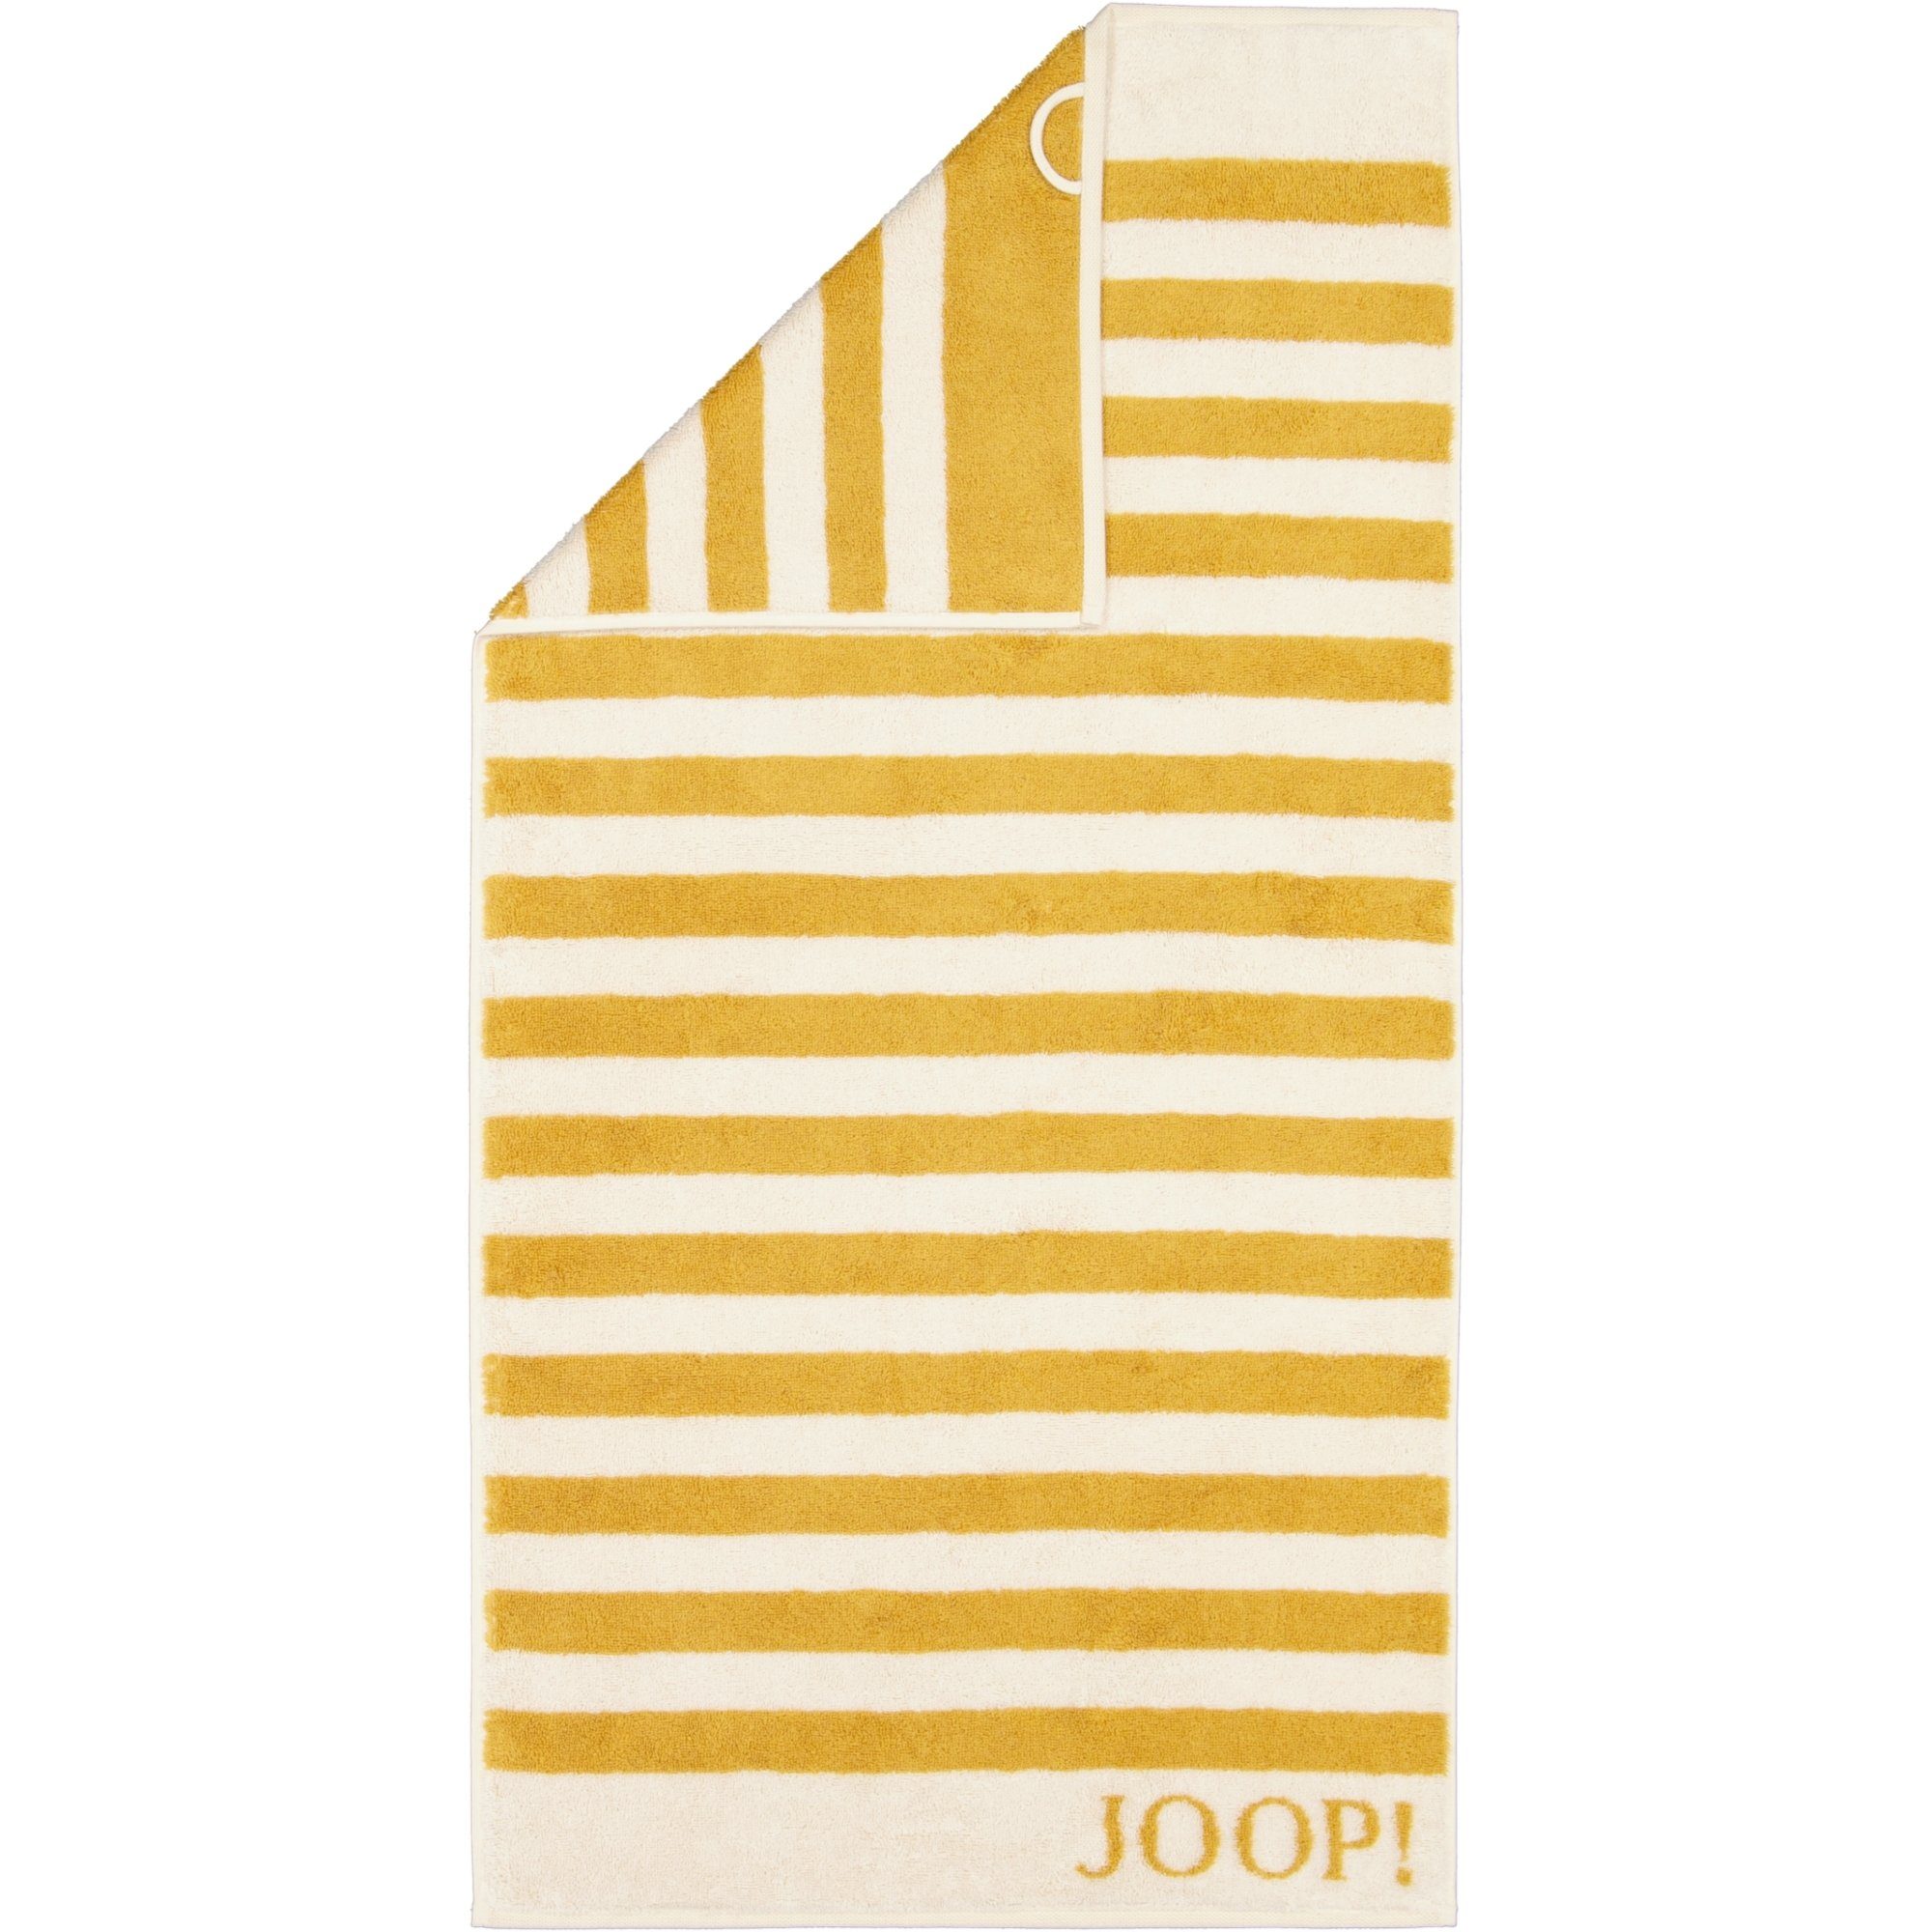 Joop! Handtücher unbekannt 100% Classic Baumwolle 1610, Stripes